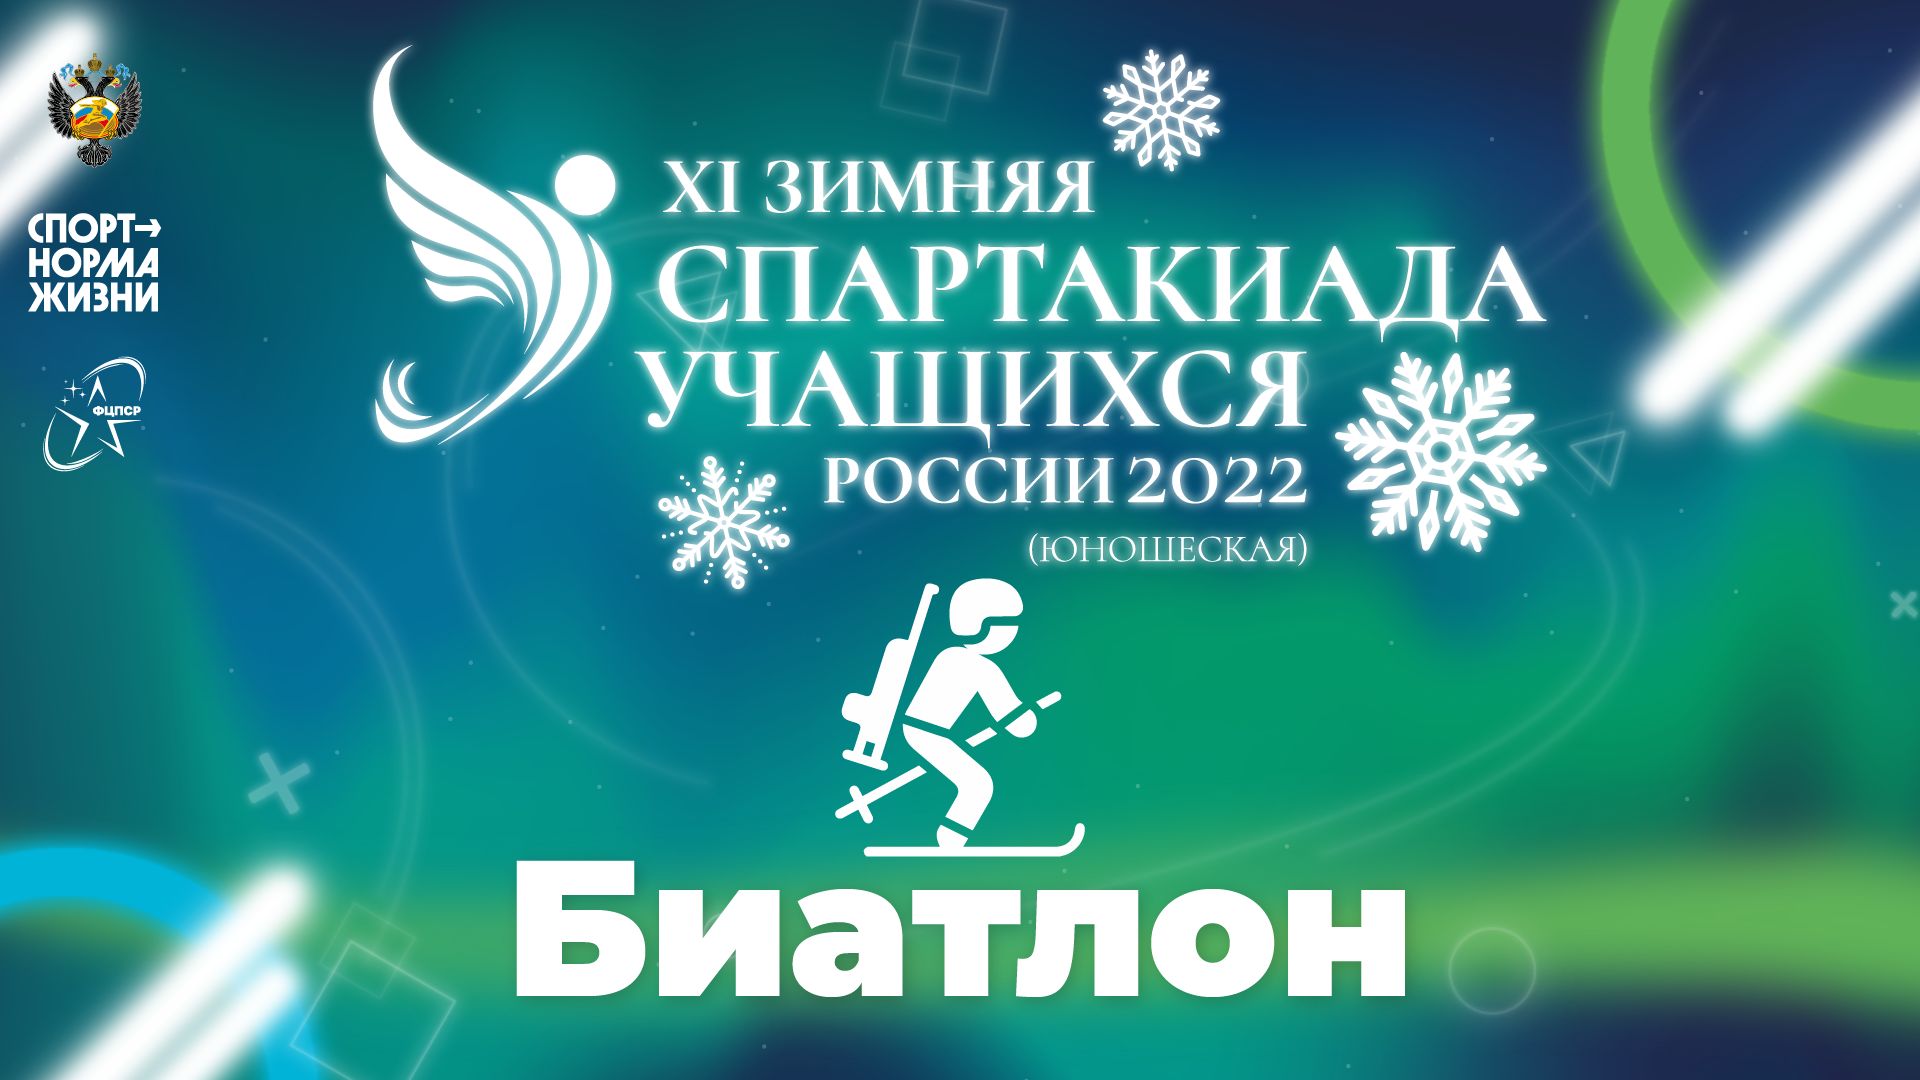 XI зимняя Спартакиада учащихся России 2022 года. Биатлон (Уфа)